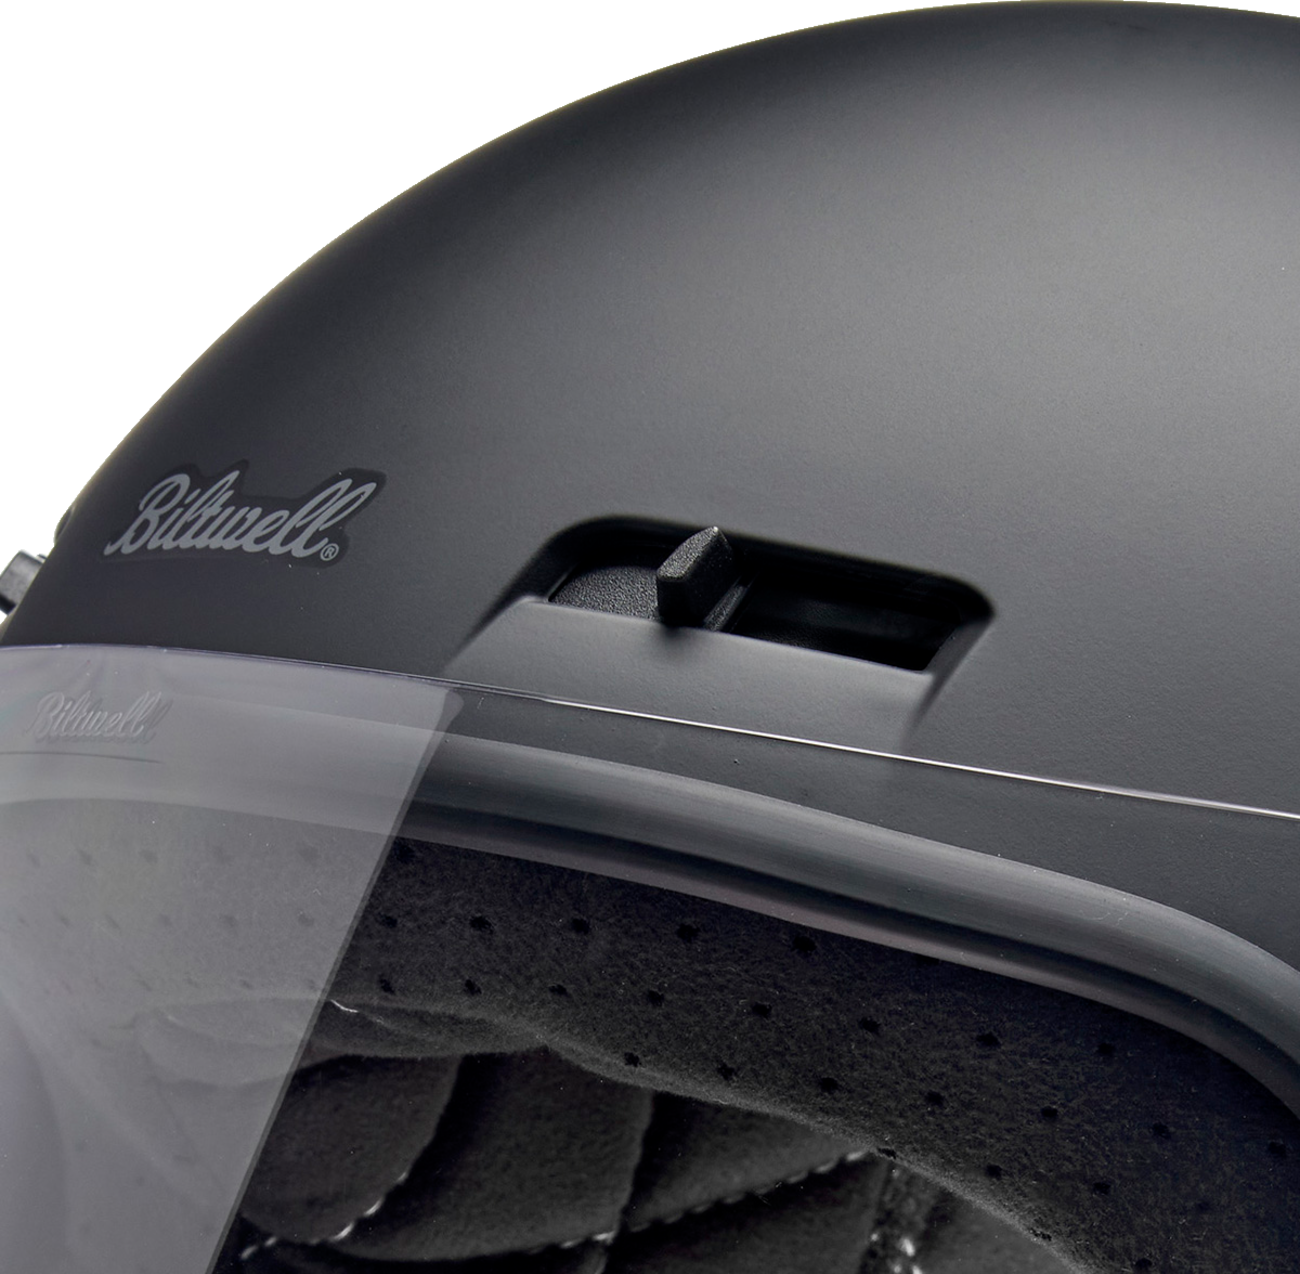 BILTWELL Gringo SV Helmet - Flat Black - 2XL 1006-201-506